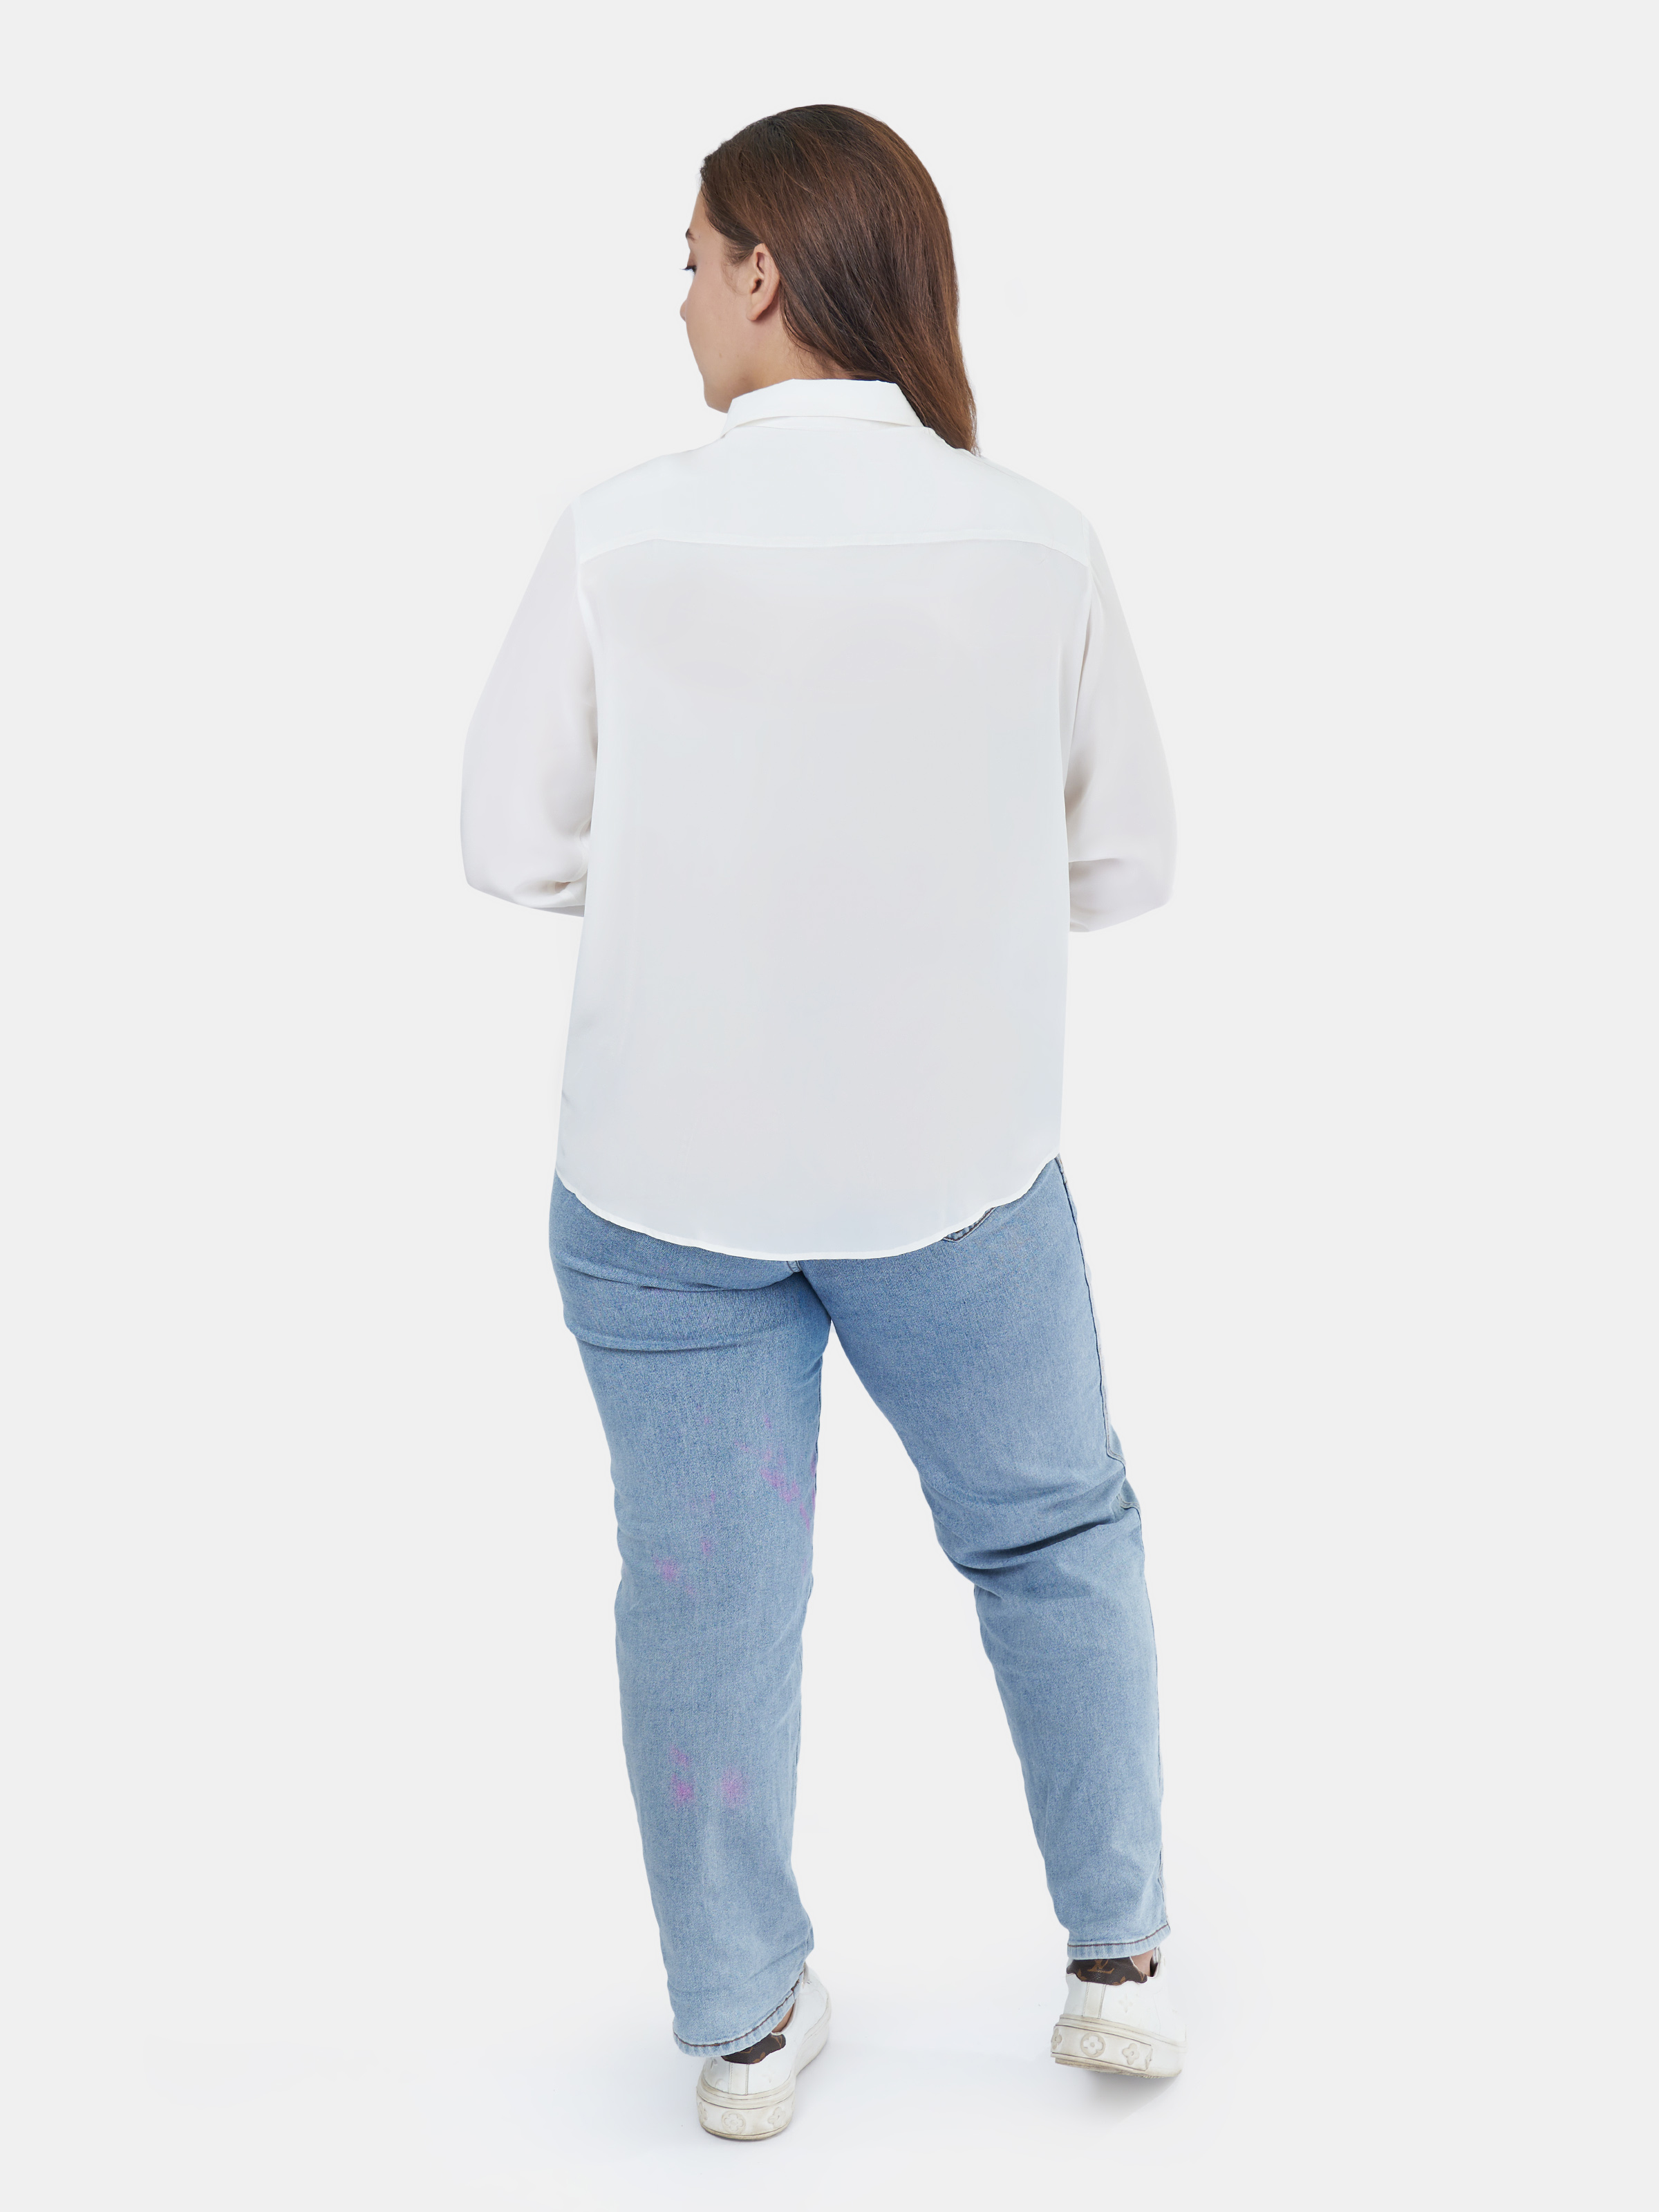 картинка Рубашка Белая магазина шелковой одежды и аксессуаров